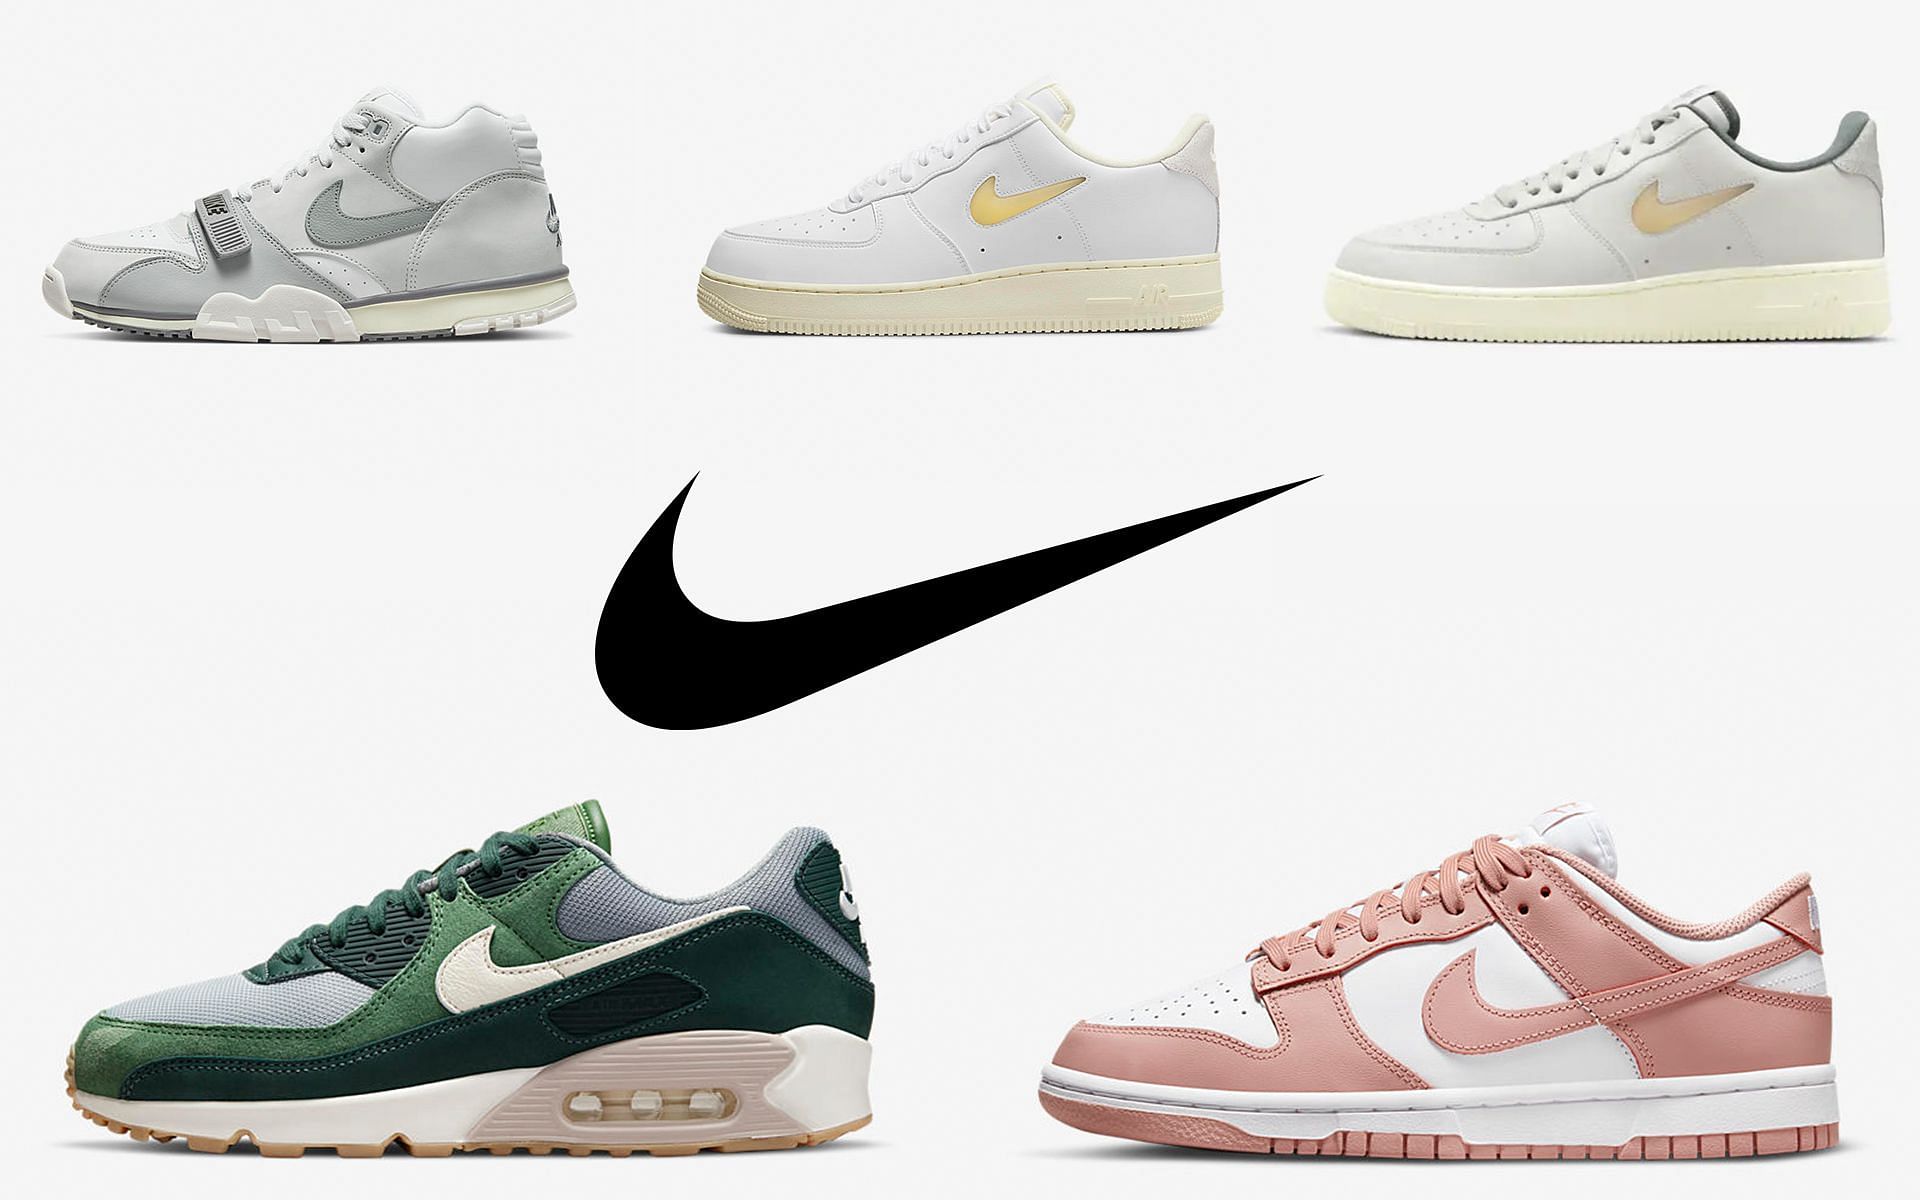 Limpia el cuarto Mecánicamente Sofisticado 5 Nike sneaker releases in week 1 of June 2022